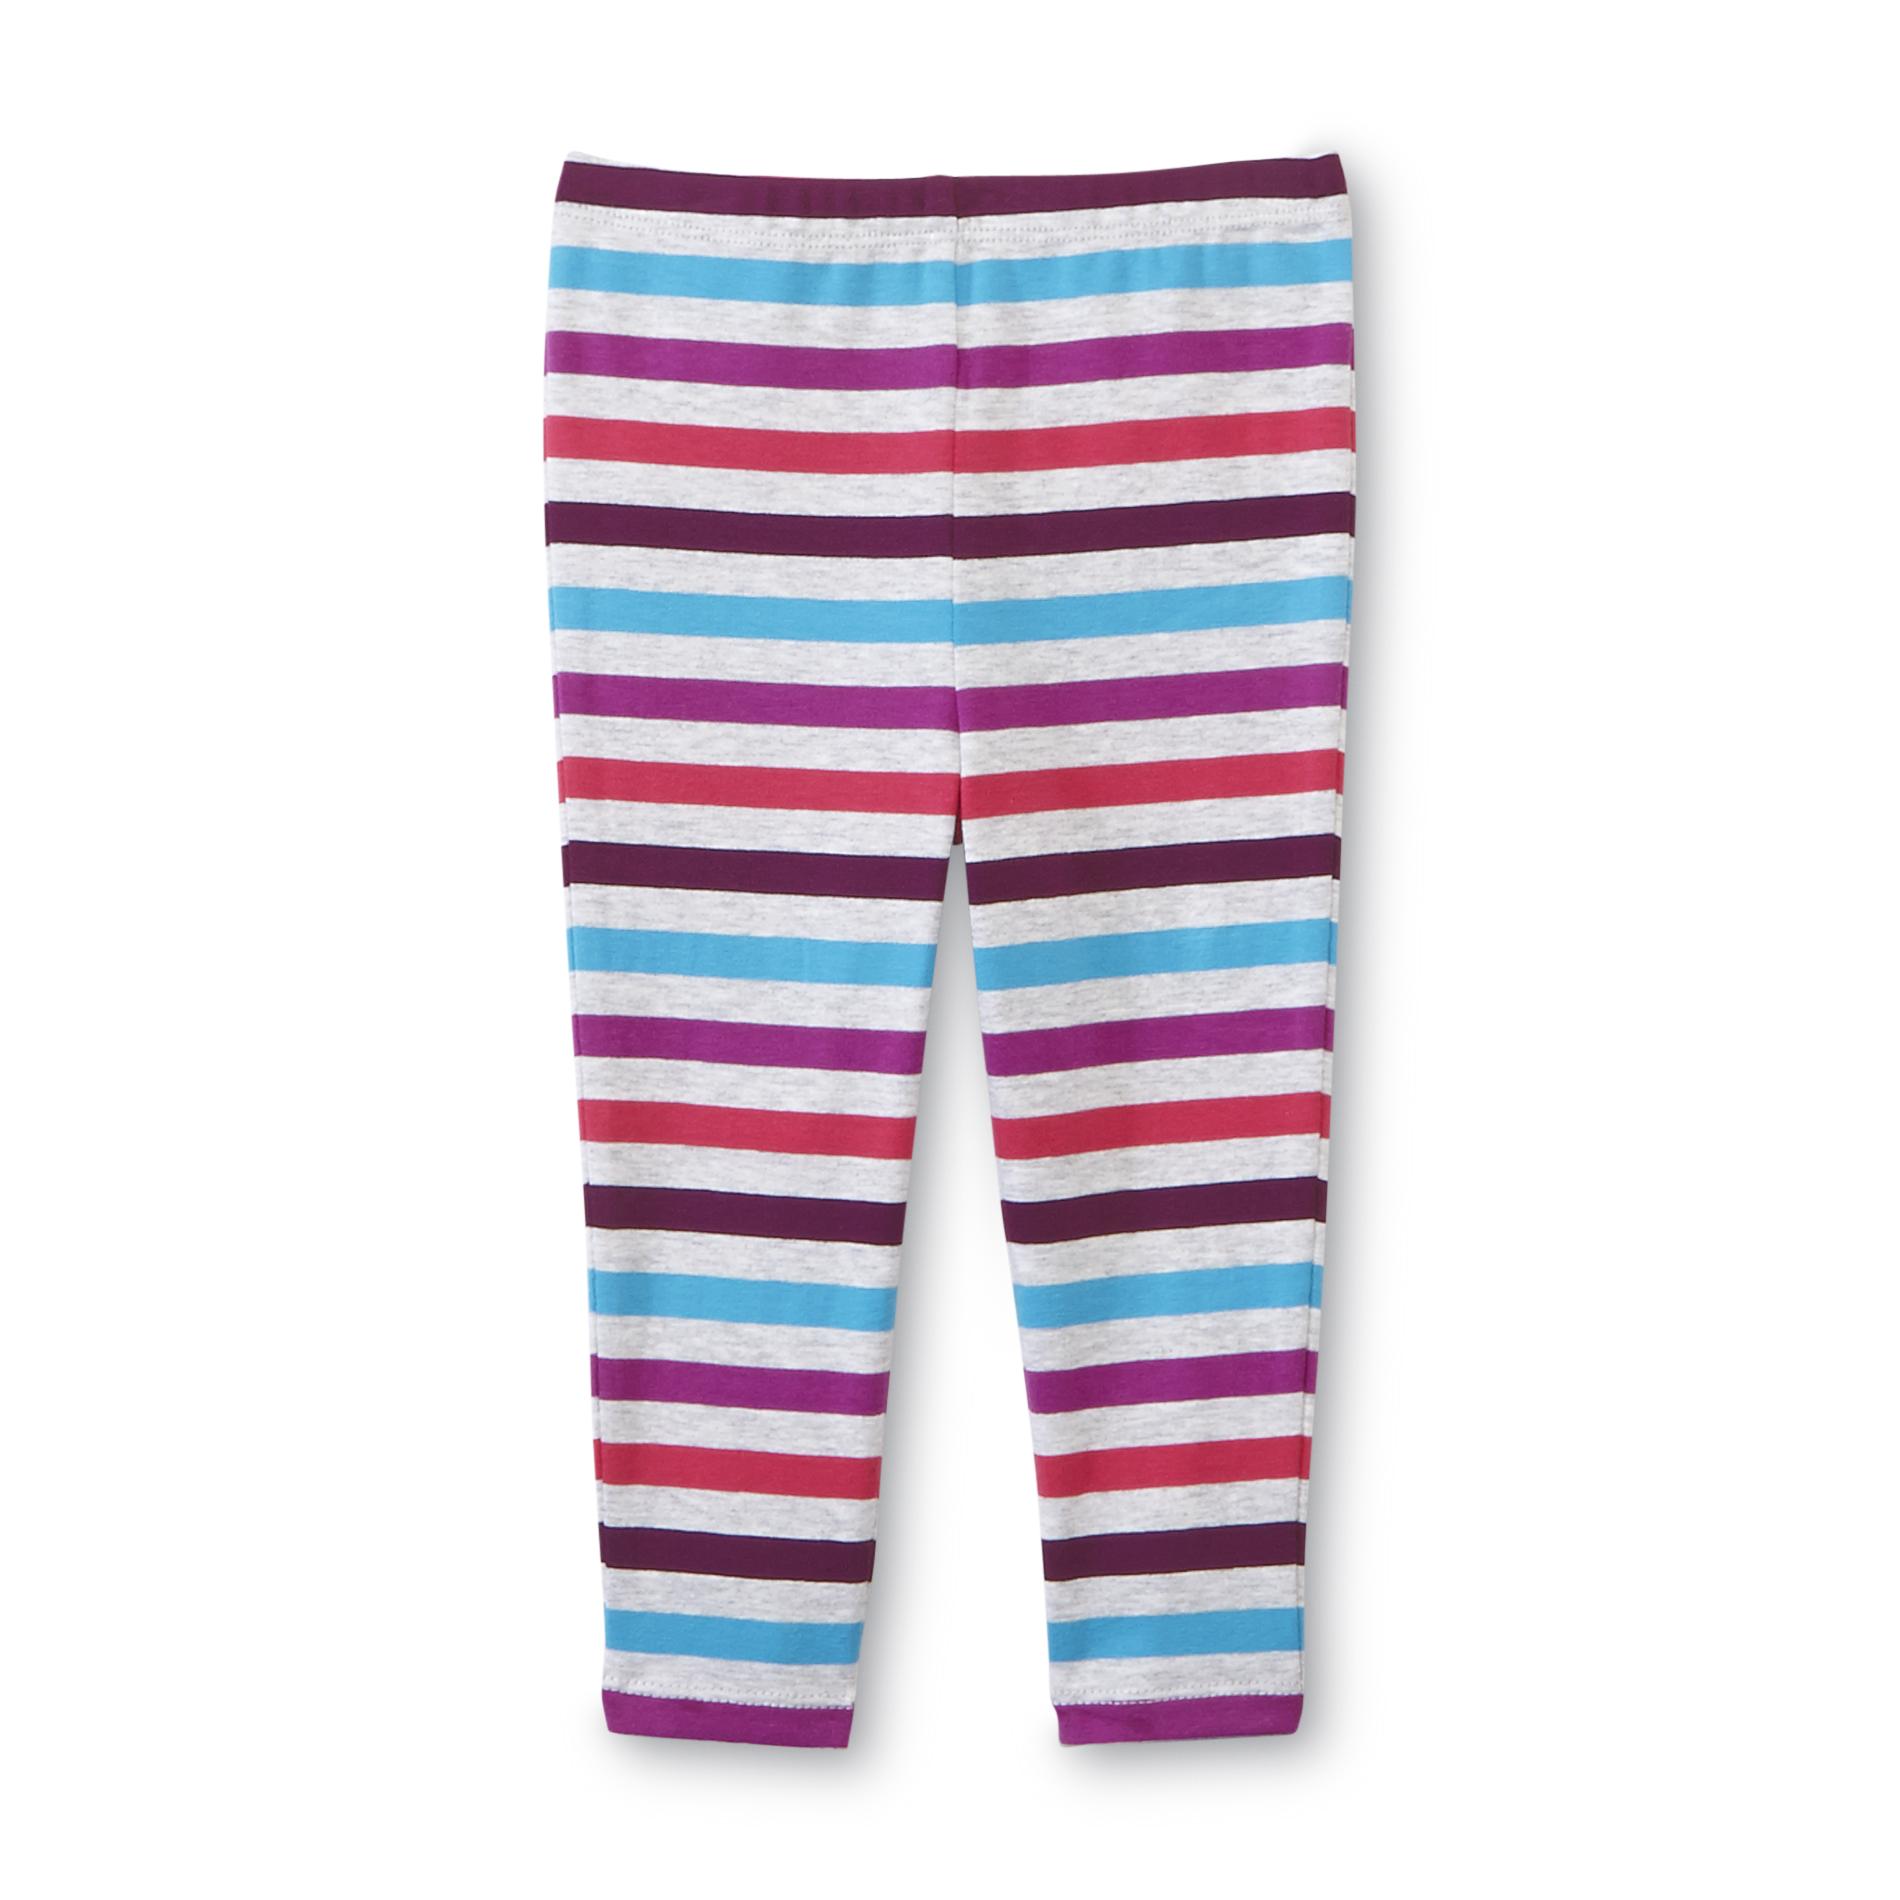 Toughskins Infant & Toddler Girl's Leggings - Striped